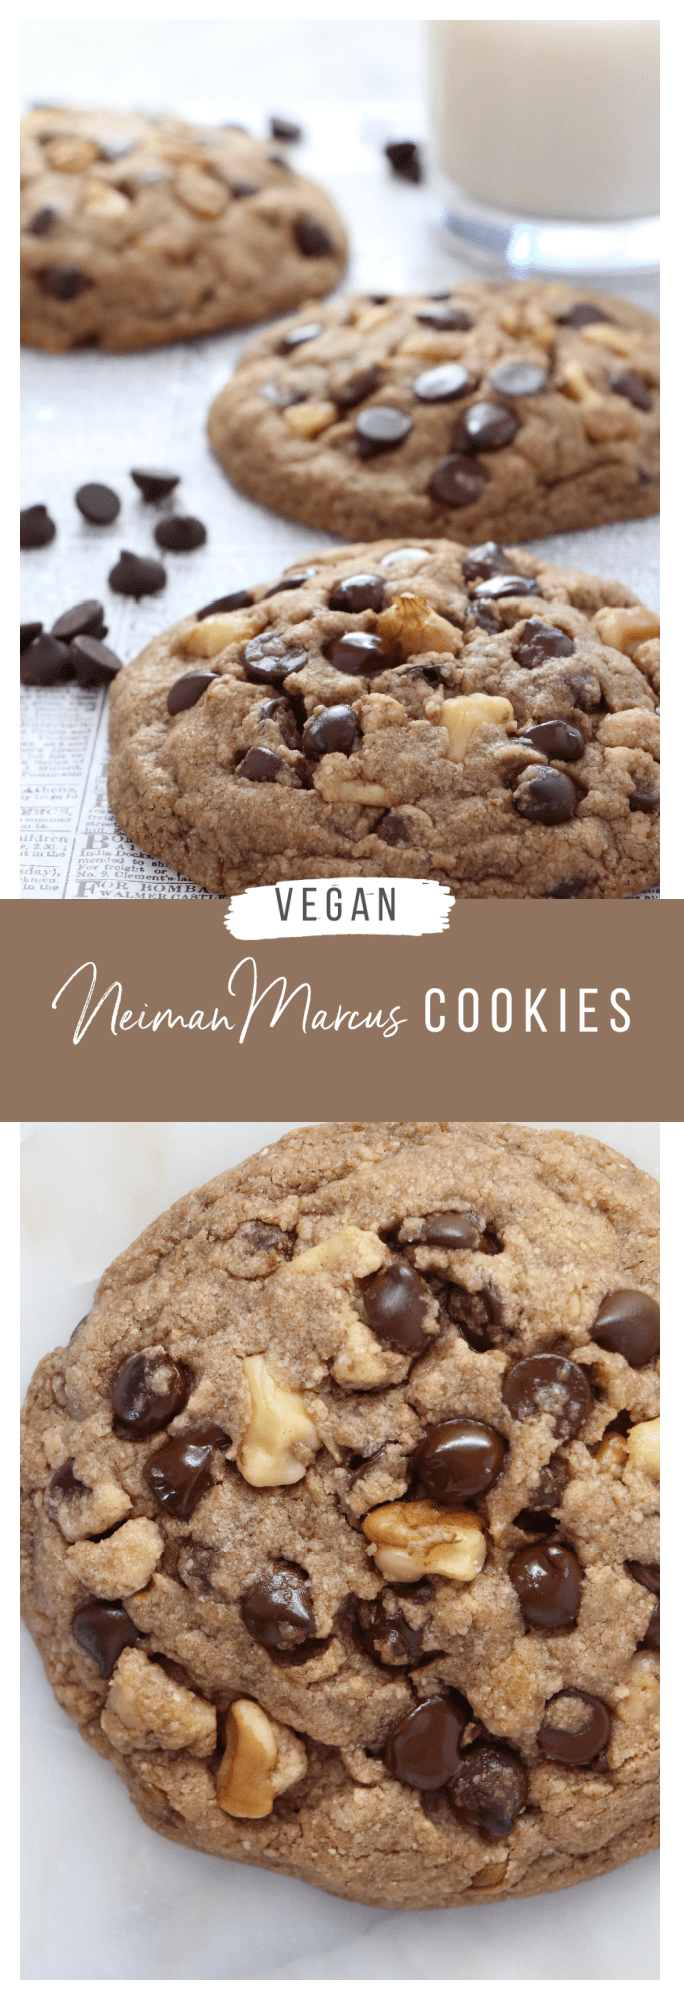 Vegan Neiman Marcus Cookies - Monkey and Me Kitchen Adventures